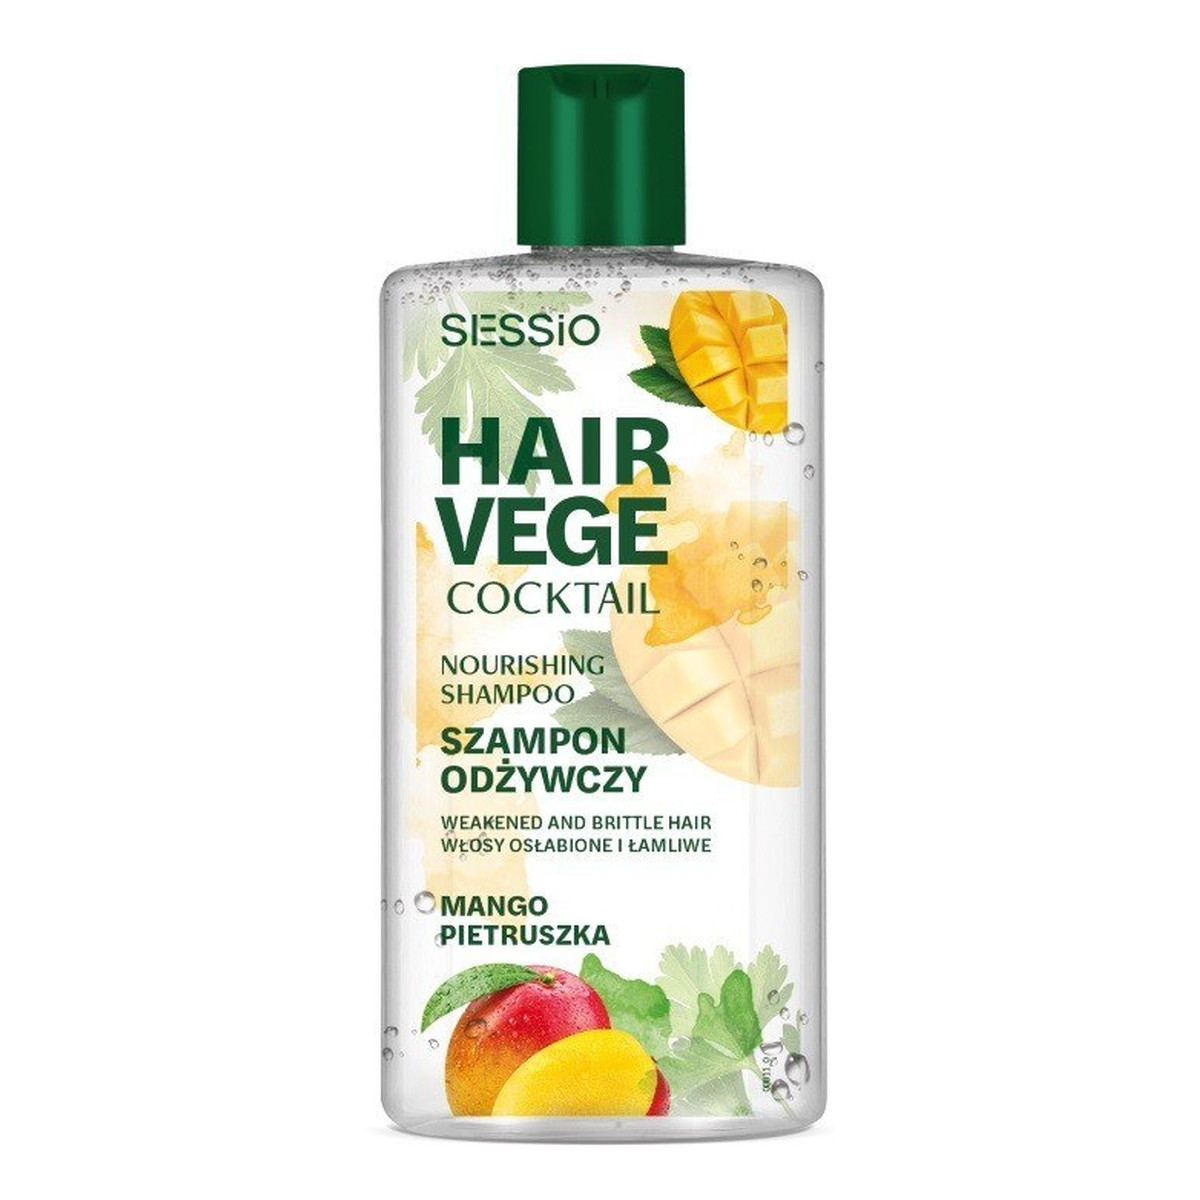 Sessio Hair Vege Cocktail Hair Vege Cocktail Nourishing Shampoo szampon odżywczy do włosów osłabionych i łamliwych Mango 300ml